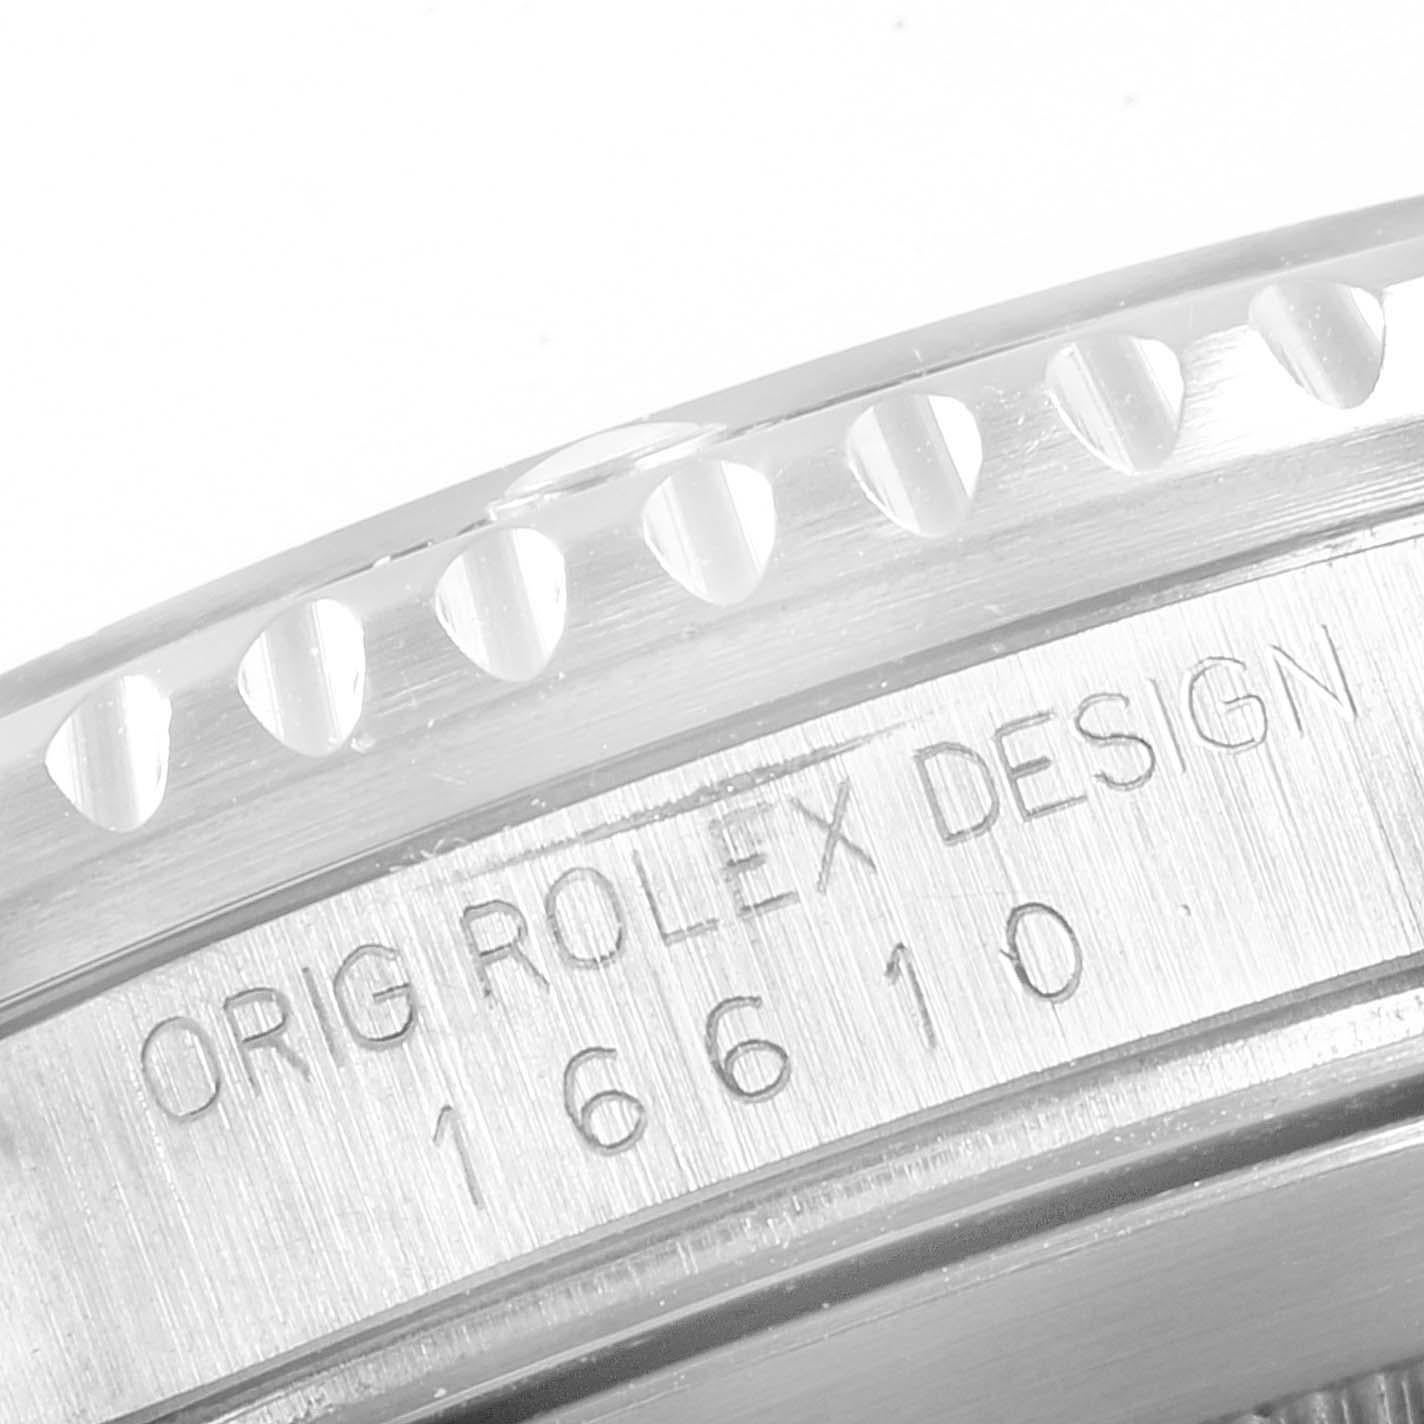 Rolex Submariner Date Stainless Steel Men's Watch 16610 3